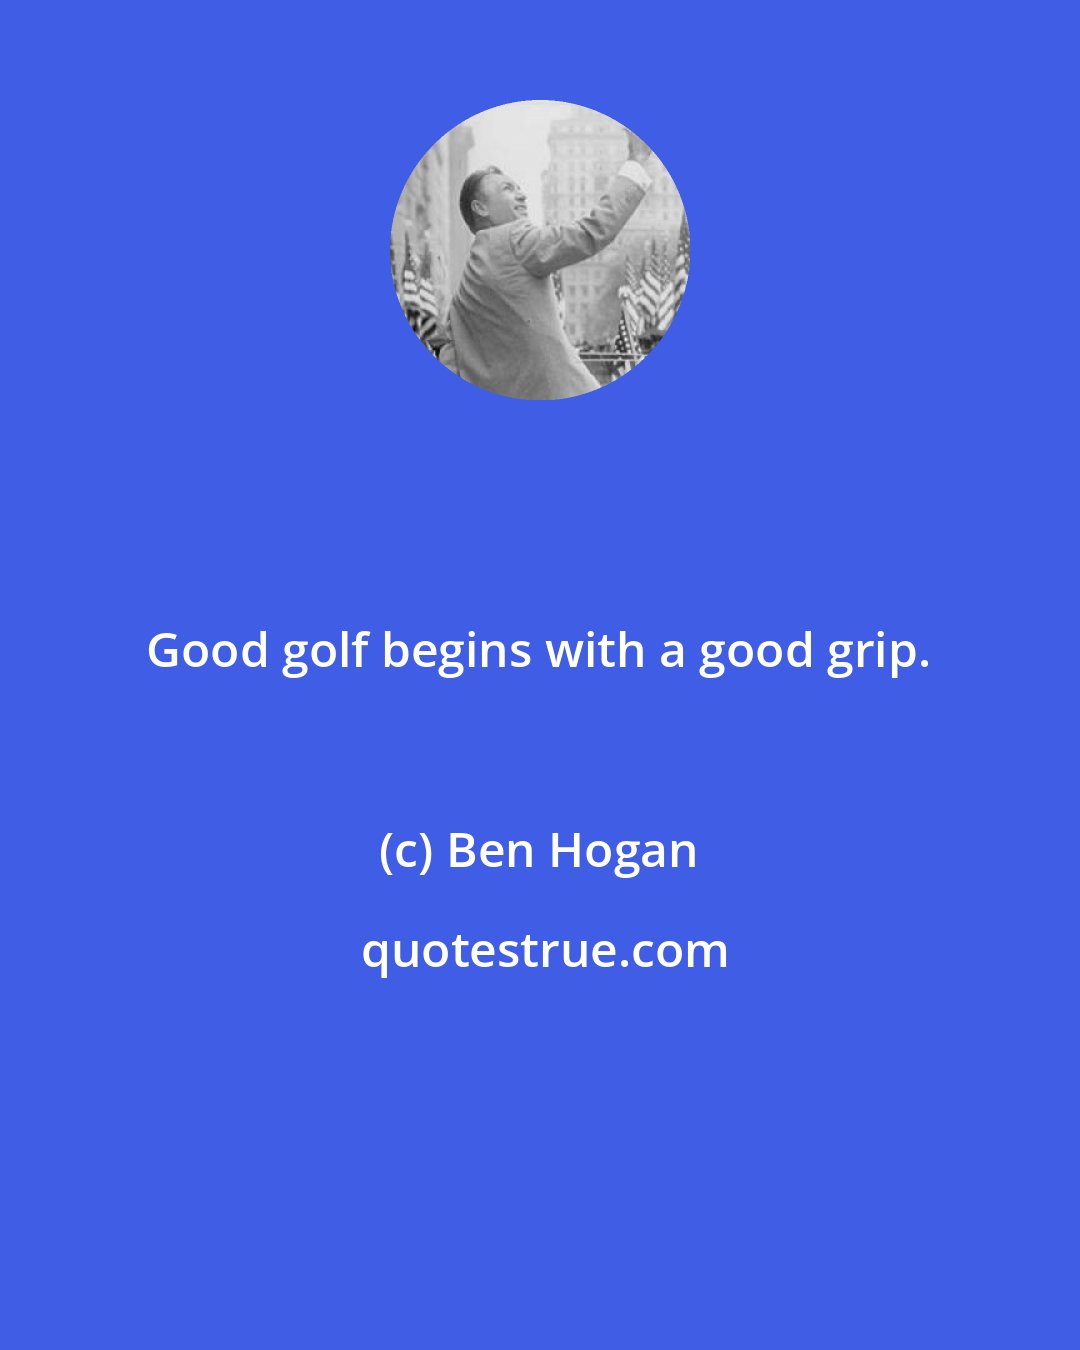 Ben Hogan: Good golf begins with a good grip.